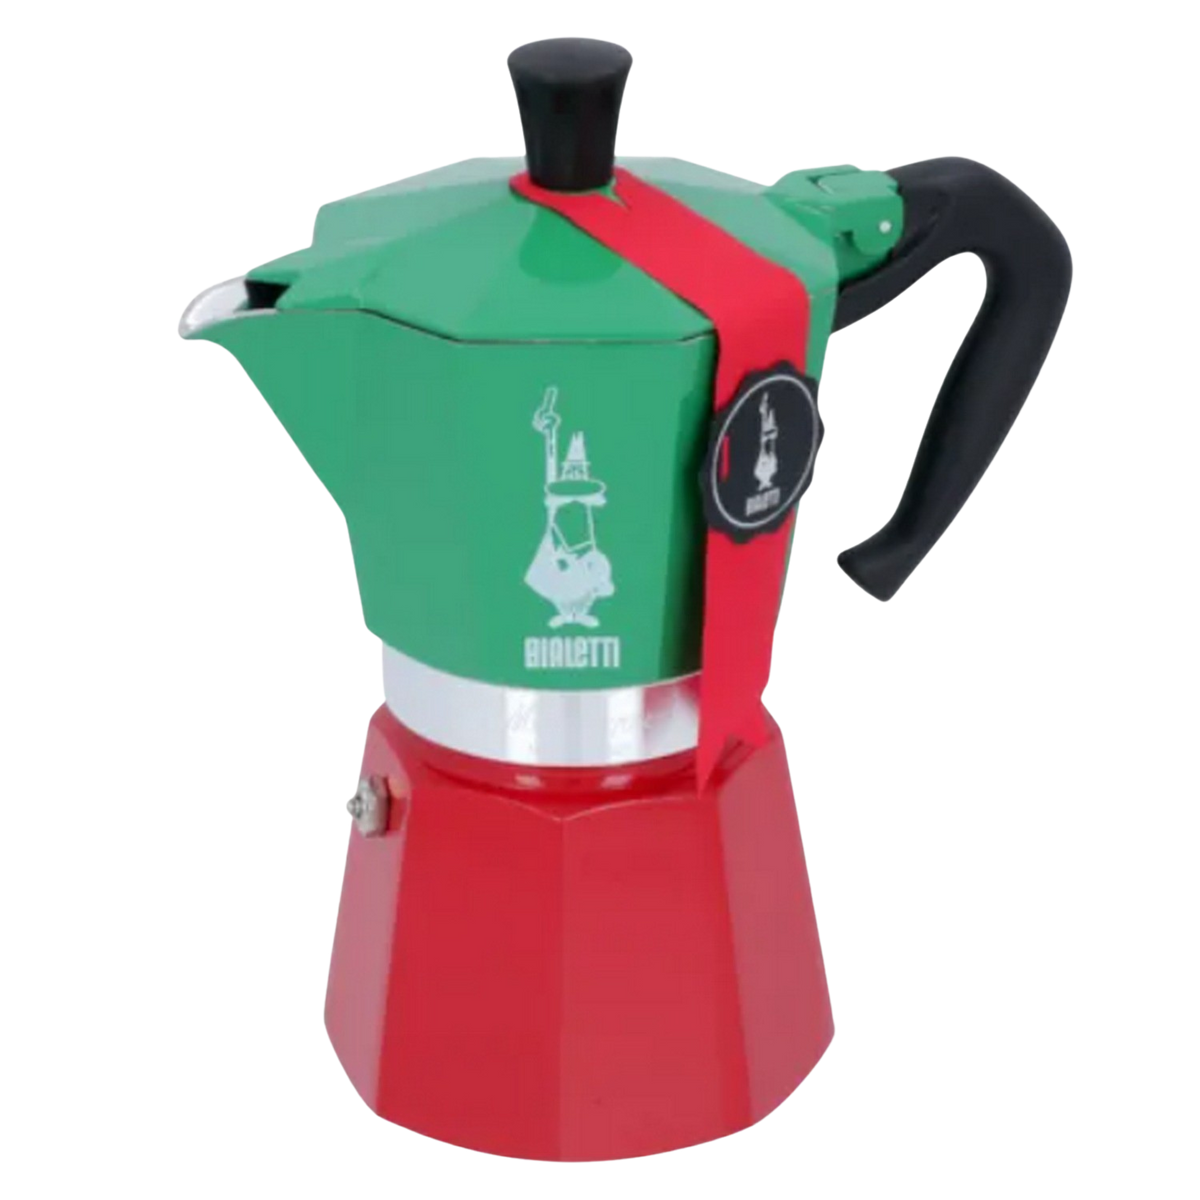 Tassen ITALIA Rot/Grün/Silber Moka für 6 BIALETTI Express Espressokocher